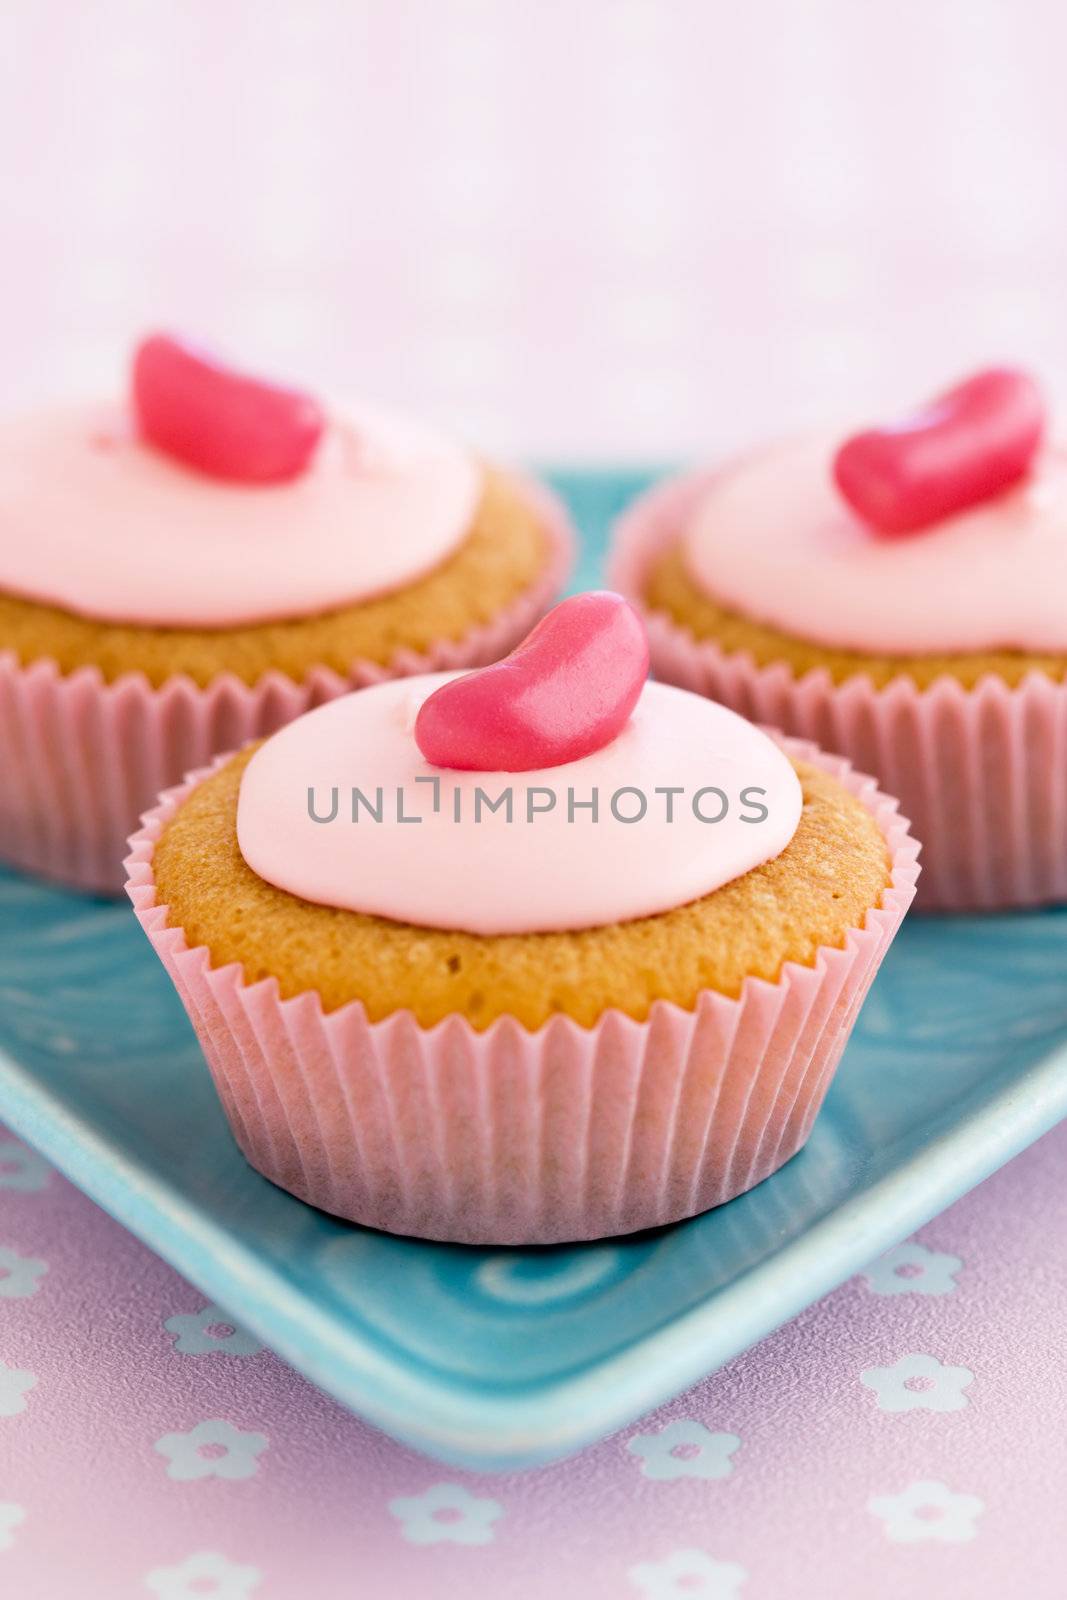 Pink cupcakes by RuthBlack